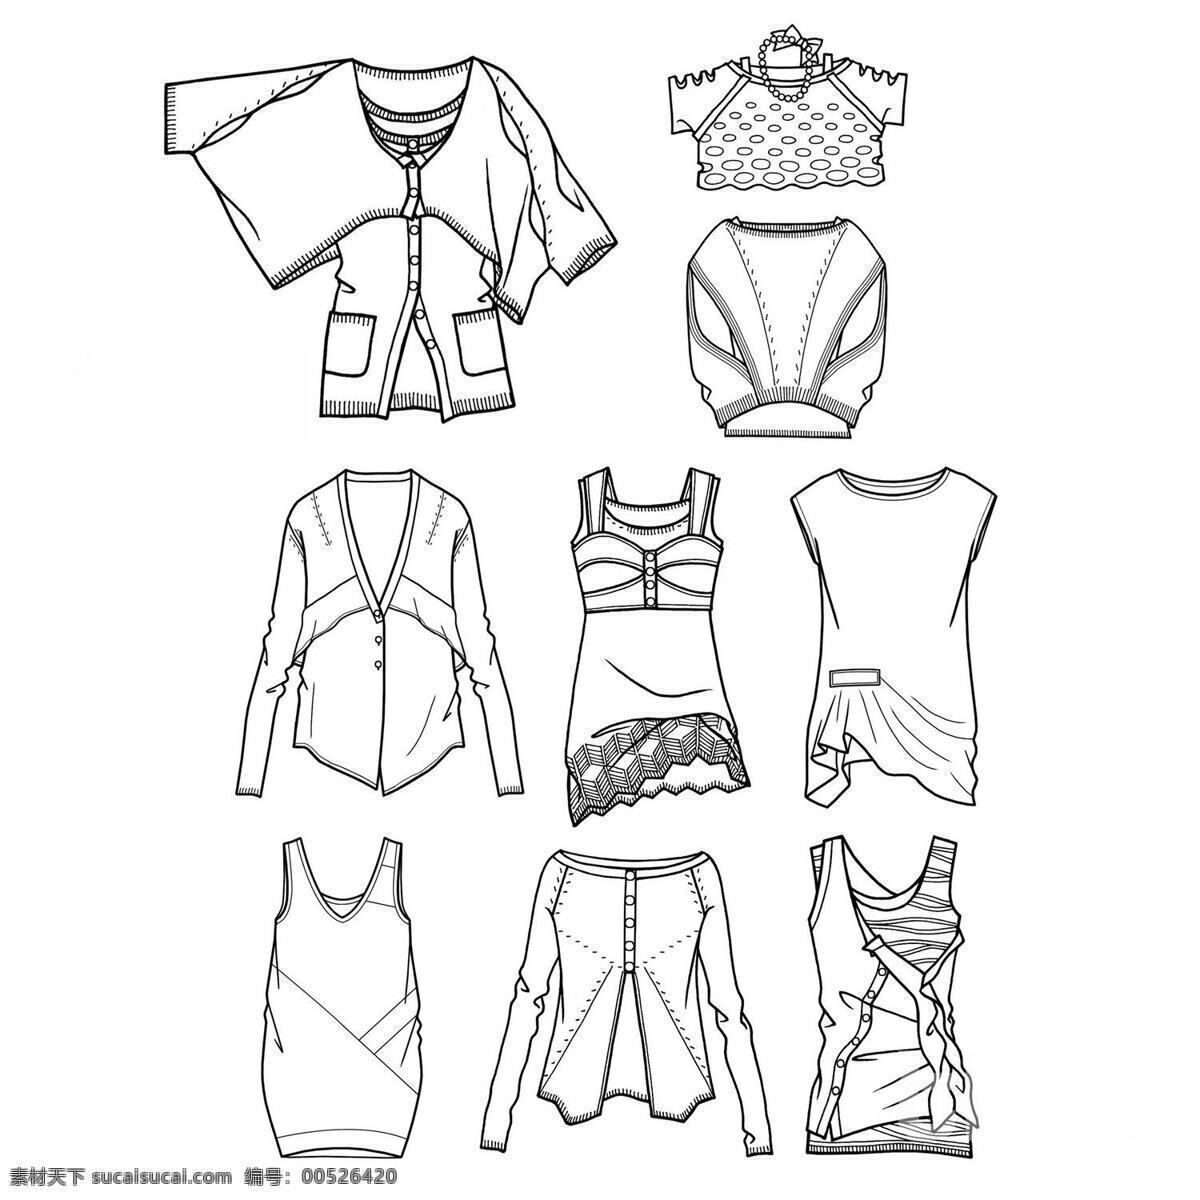 动漫动画 服装 服装设计 服装设计素材 服装设计图片 女装 平面设计 原 画稿 设计素材 模板下载 时尚 其他服装素材